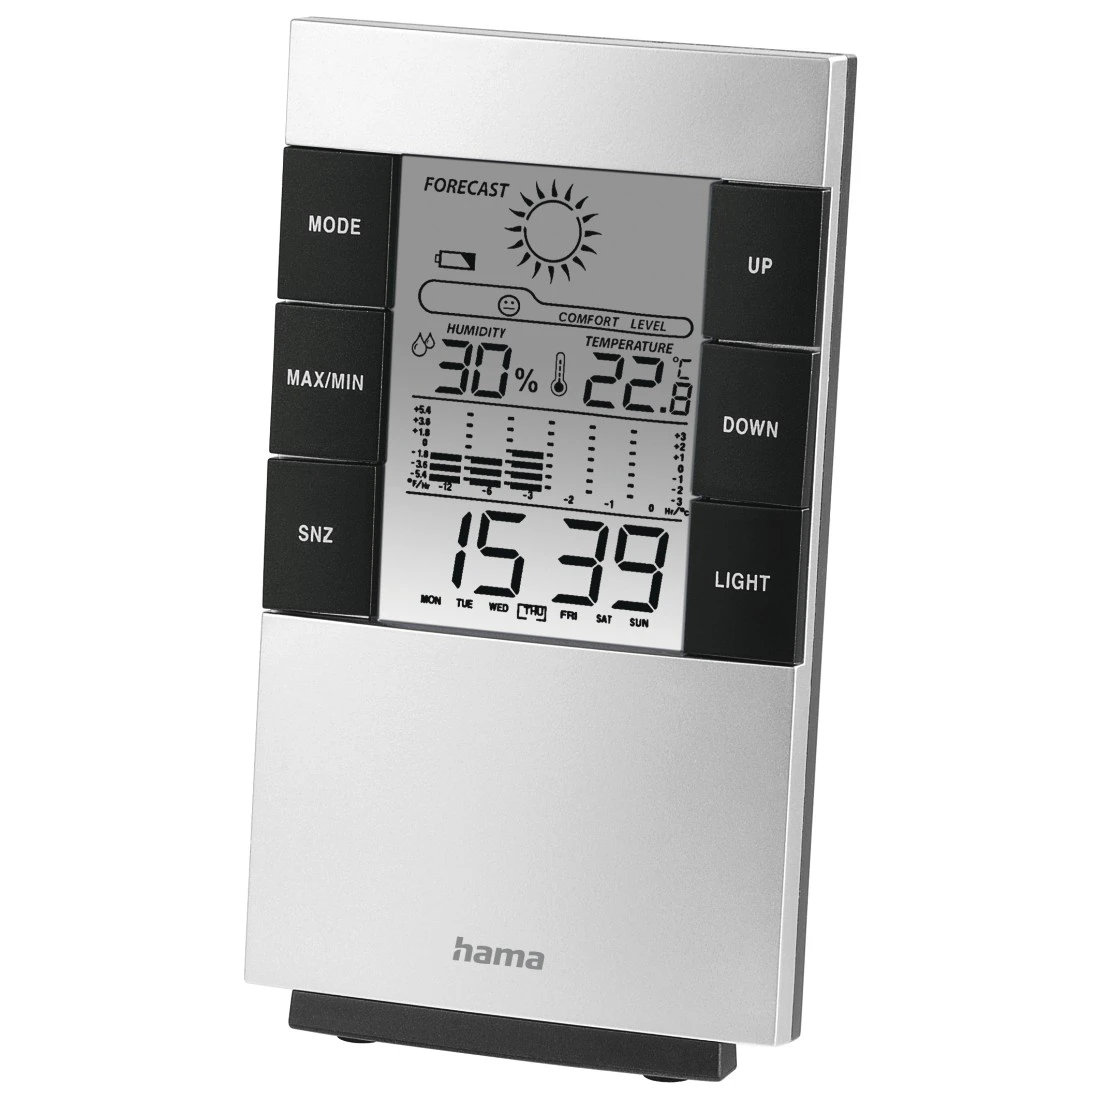 Mini Thermo Hygromètre pour mesurer température et humidité